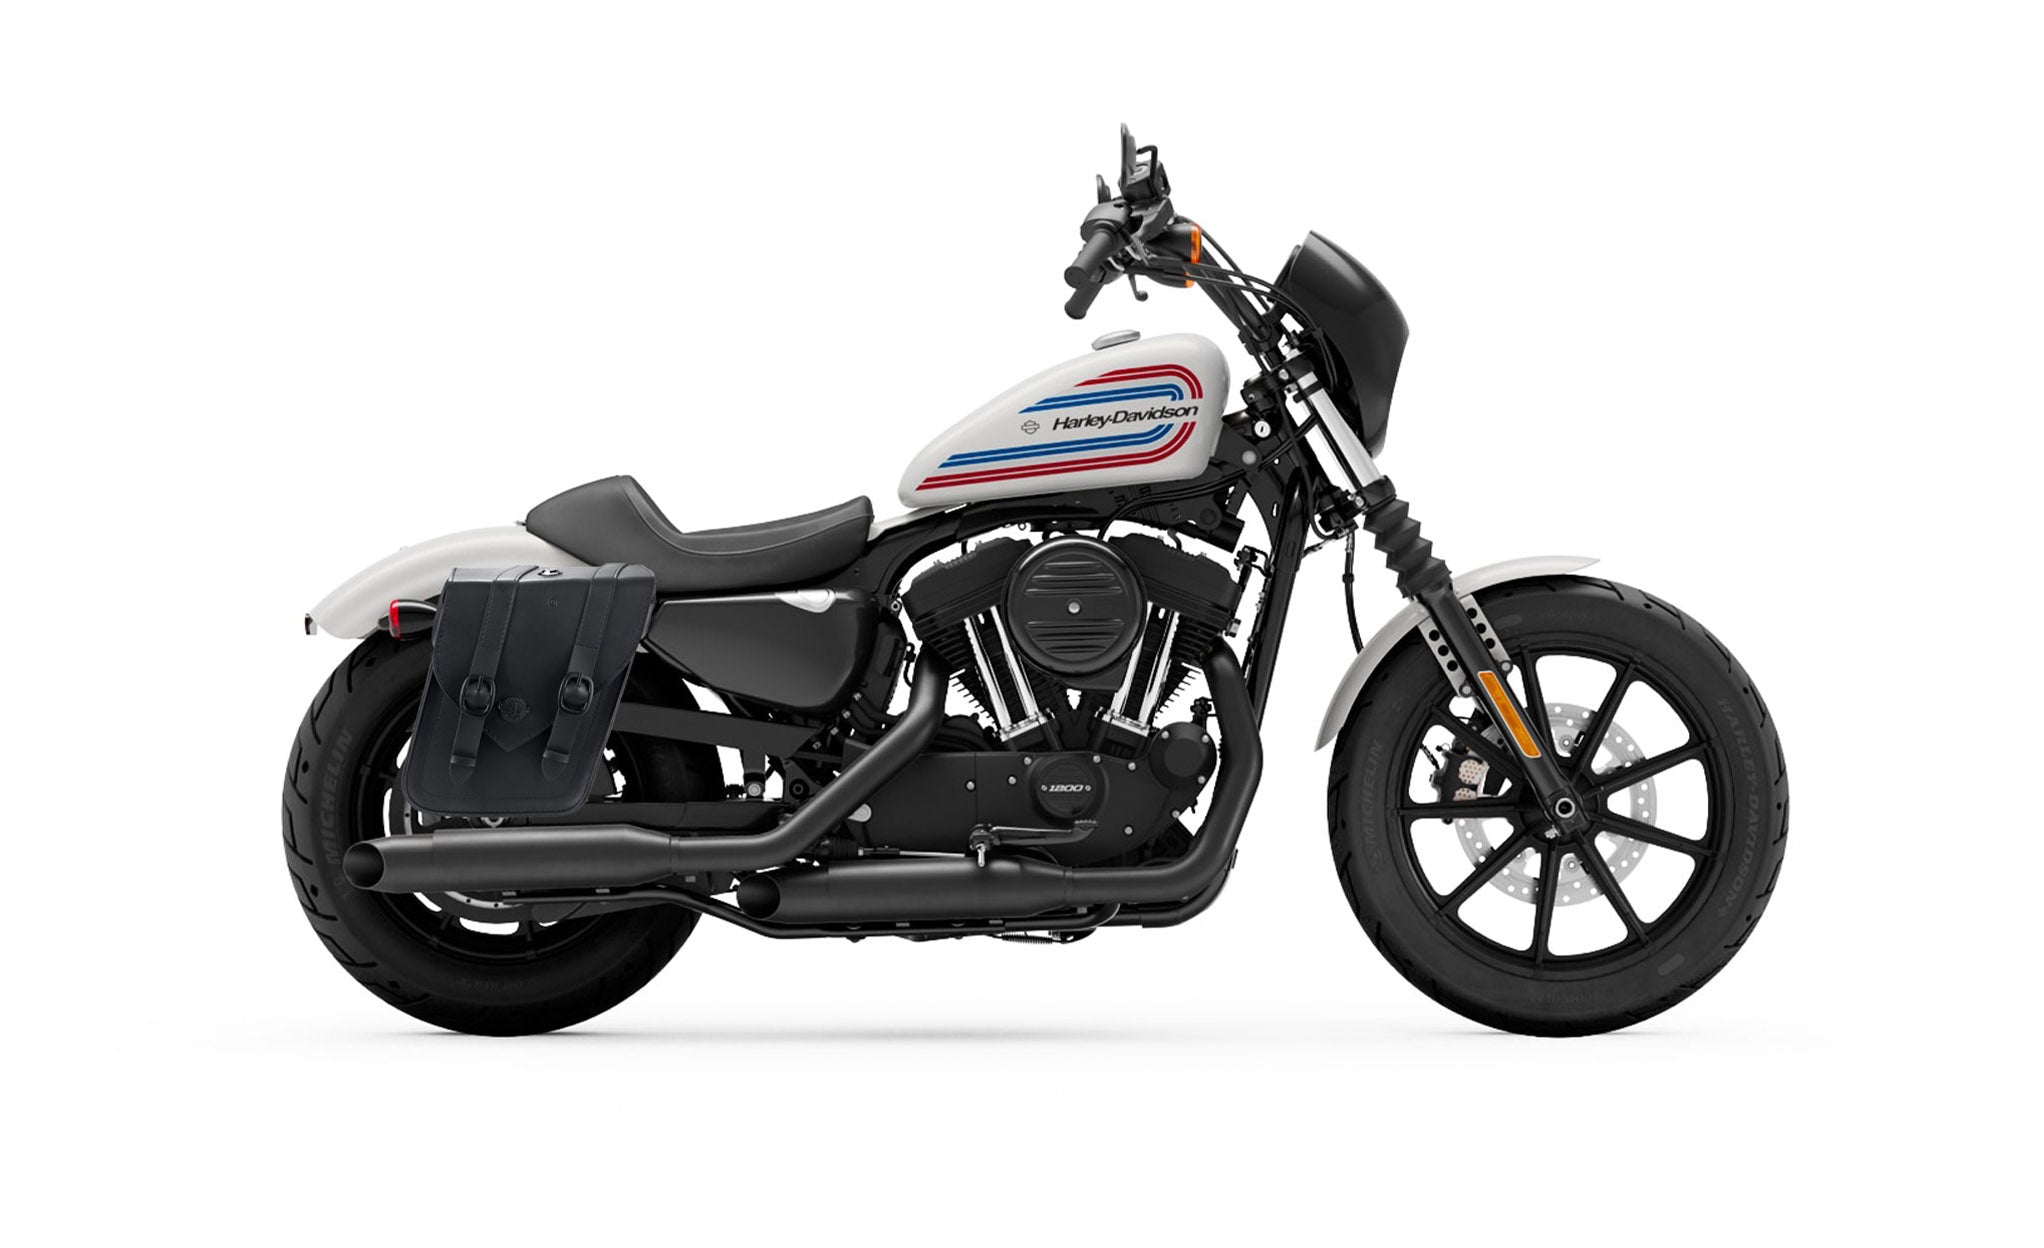 Viking Dark Age Medium Leather Motorcycle Saddlebags For Harley Sportster 1200 Iron Xl1200Ns on Bike Photo @expand